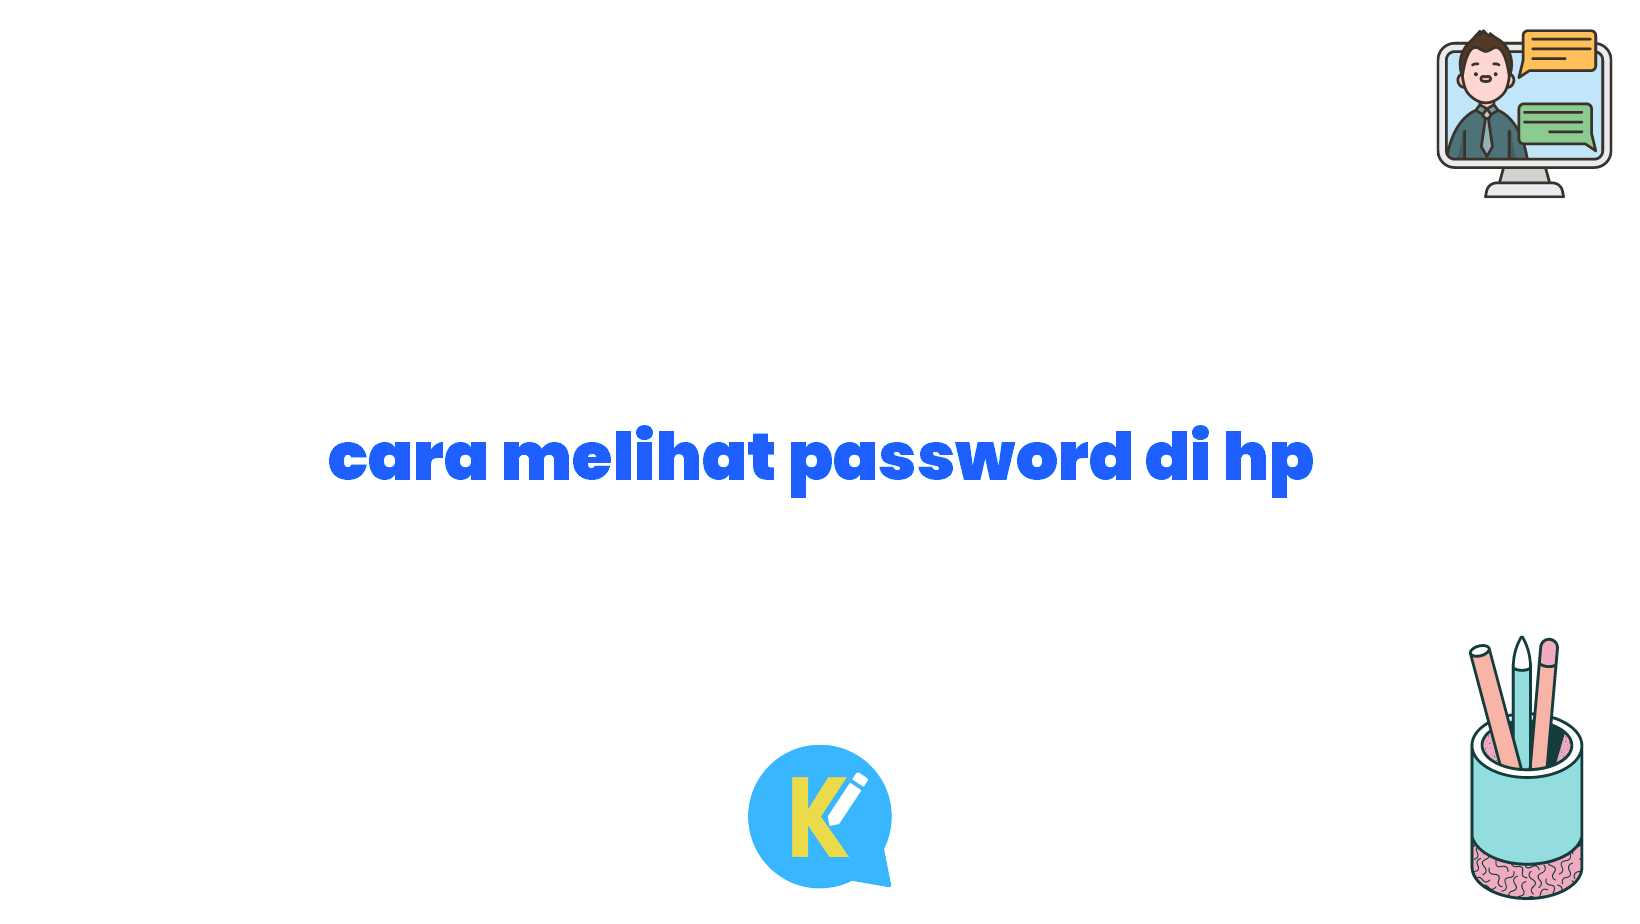 cara melihat password di hp